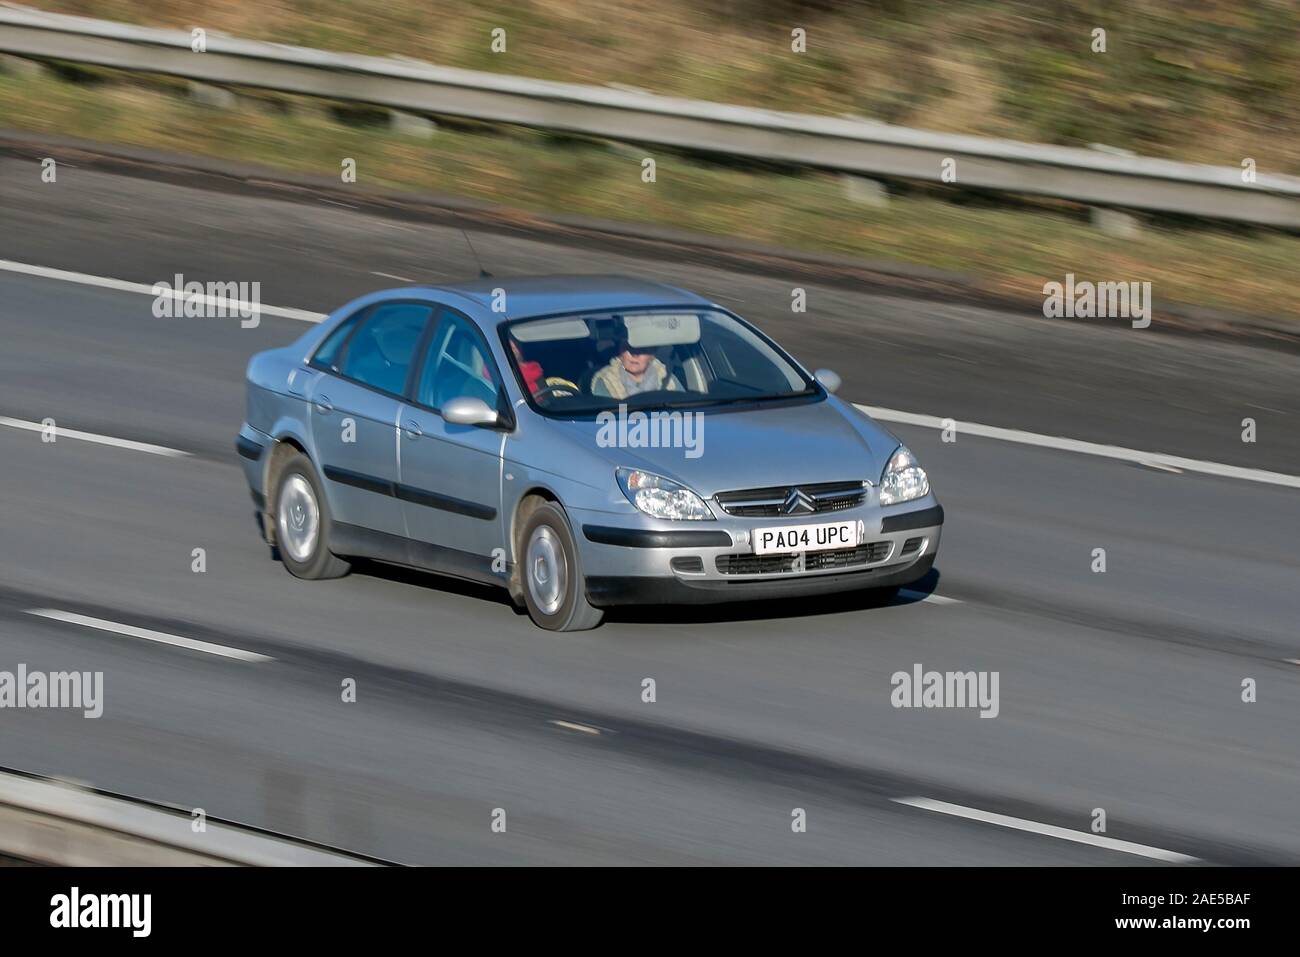 Citroën C5 HDI LX Auto; sfocata auto in movimento che viaggiano a velocità sulla M61; lenta velocità dello shutter esagerando il movimento del veicolo Foto Stock